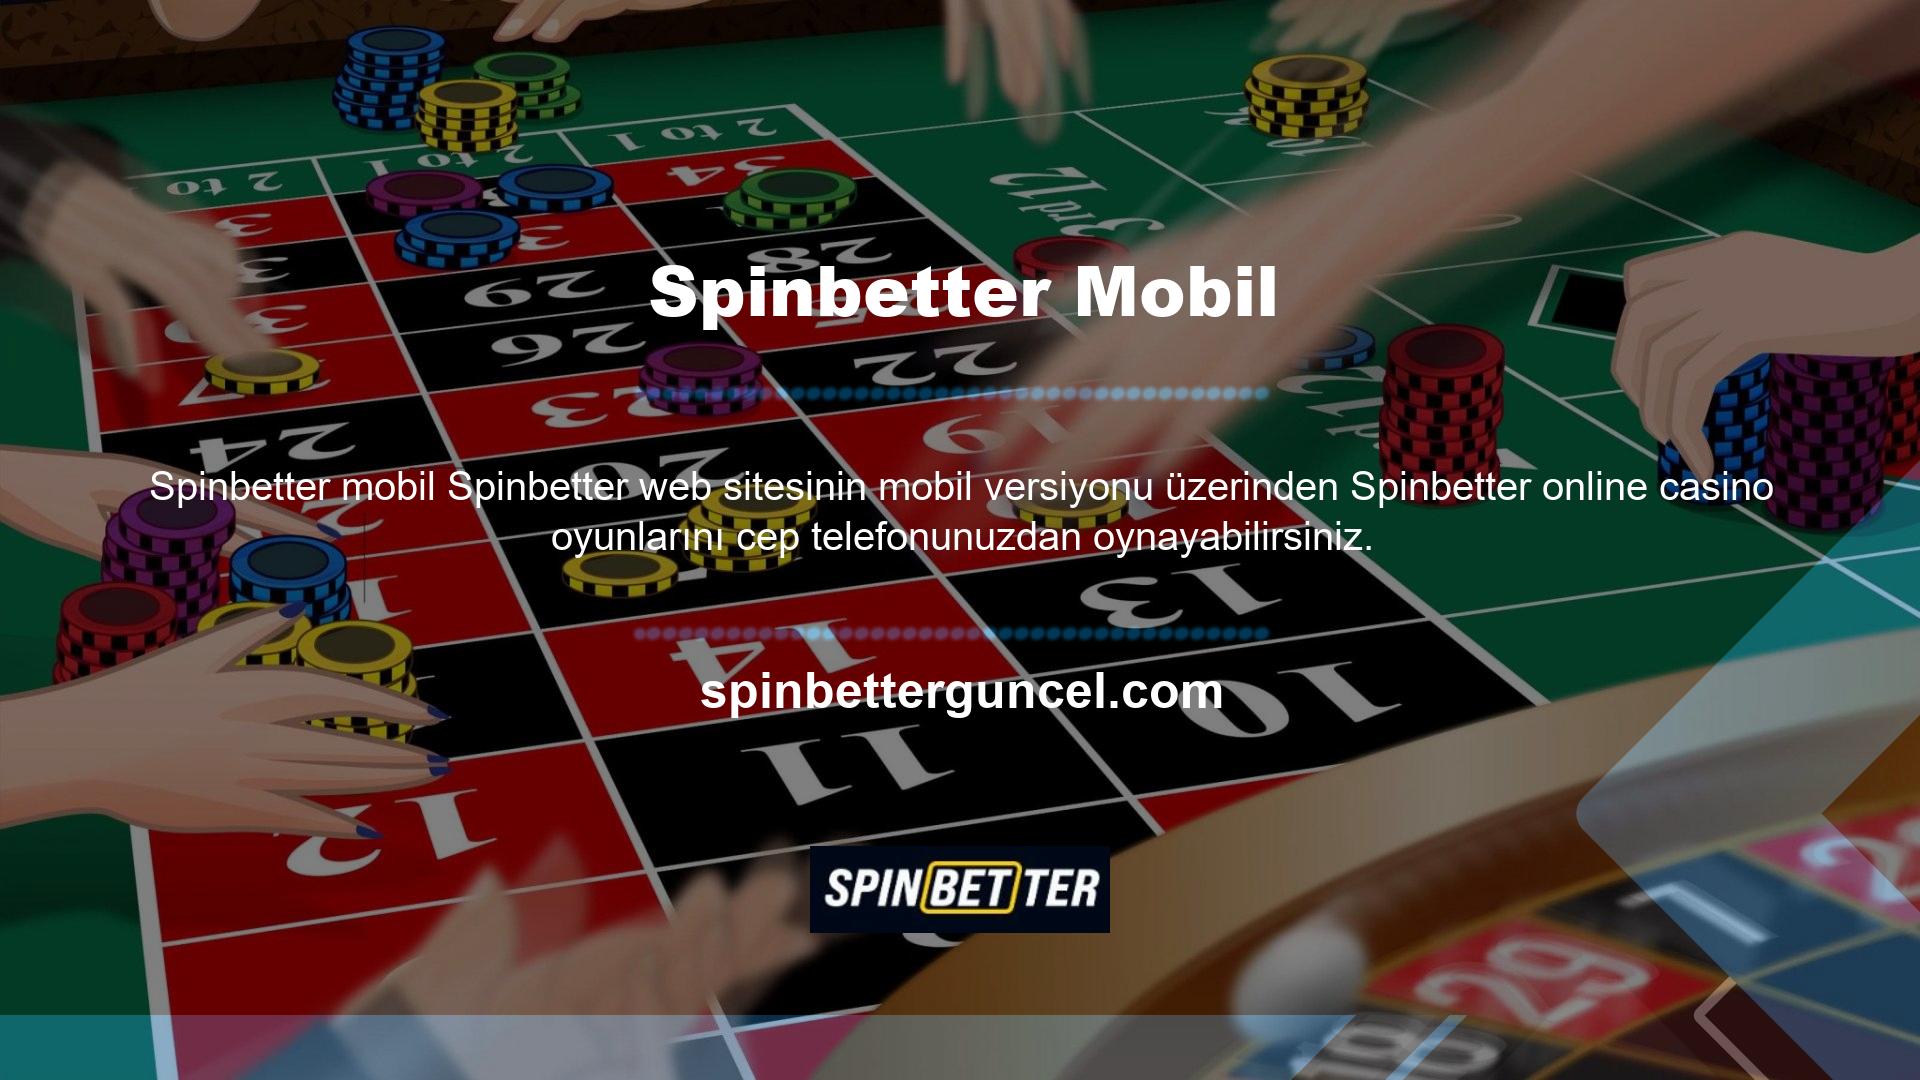 Spinbetter üyelerine özel olarak tasarlanmış mobil uygulamamız ile nerede olursanız olun online casino masalarına katılın